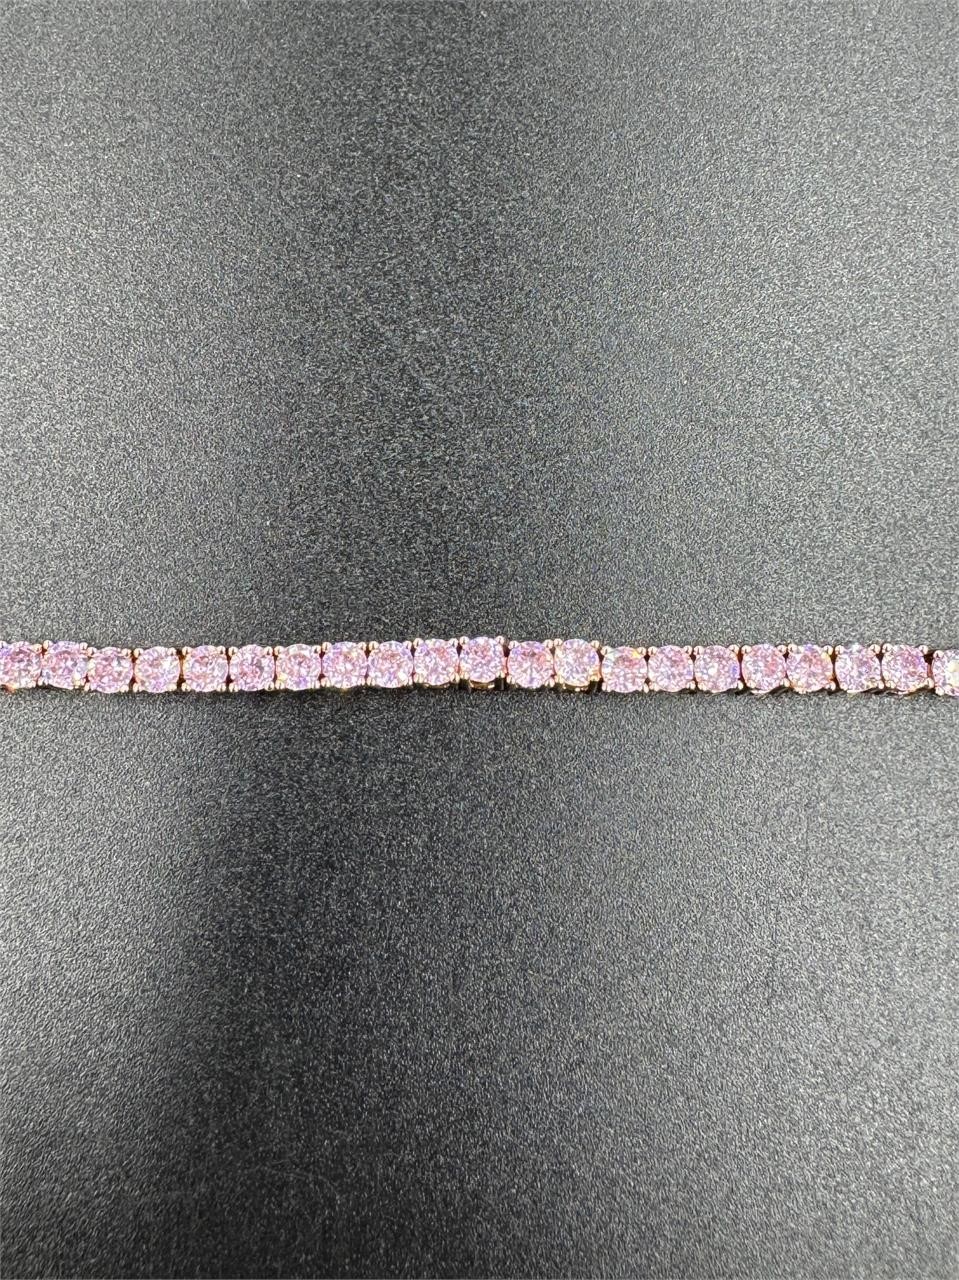 59.55 TCW Pink Sapphire Tennis Bracelet S925 7in